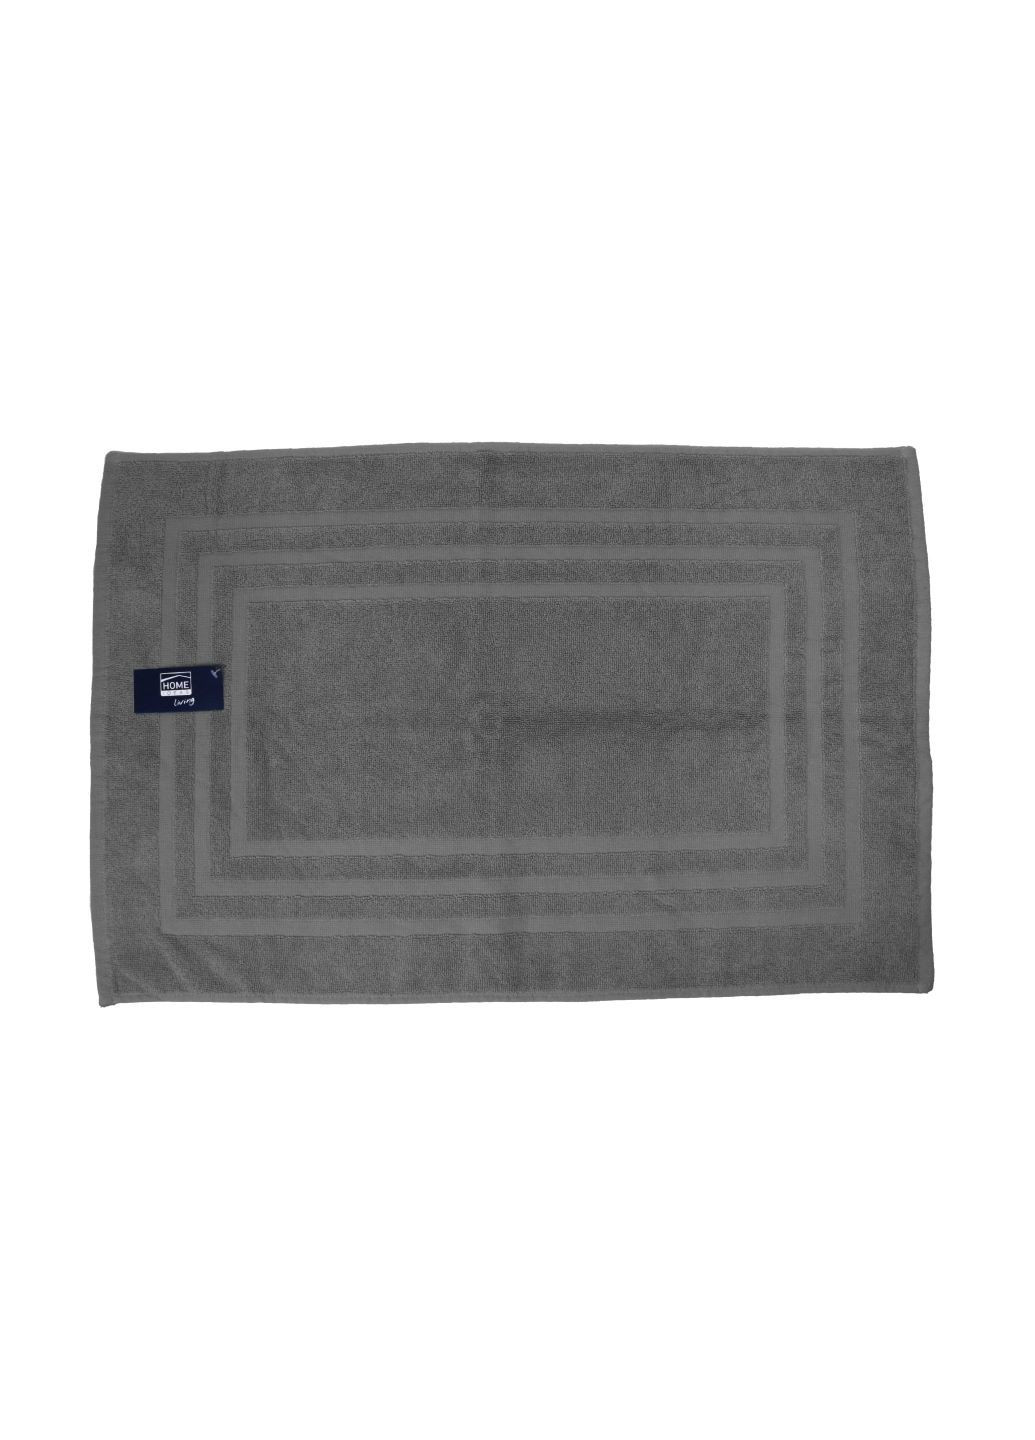 Home Ideas набор полотенец-ковриков махровых 2 шт 50х75 см серые серый производство - Германия